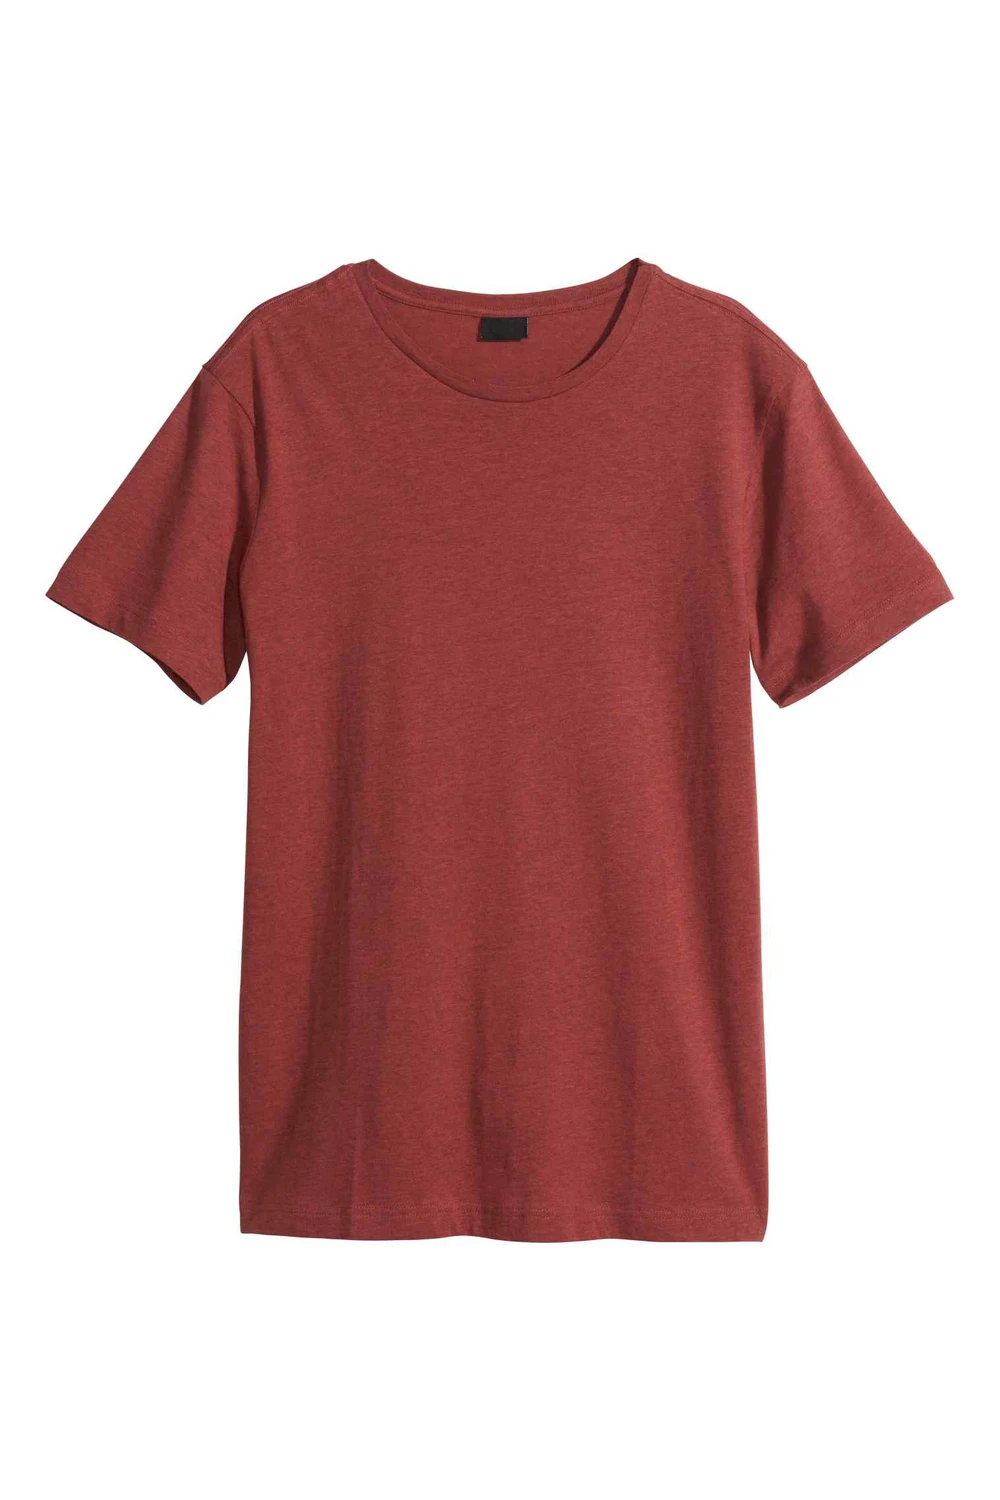 Blank Tshirt No Label Without Tshirt Printing - Buy Tshirt Printing ...